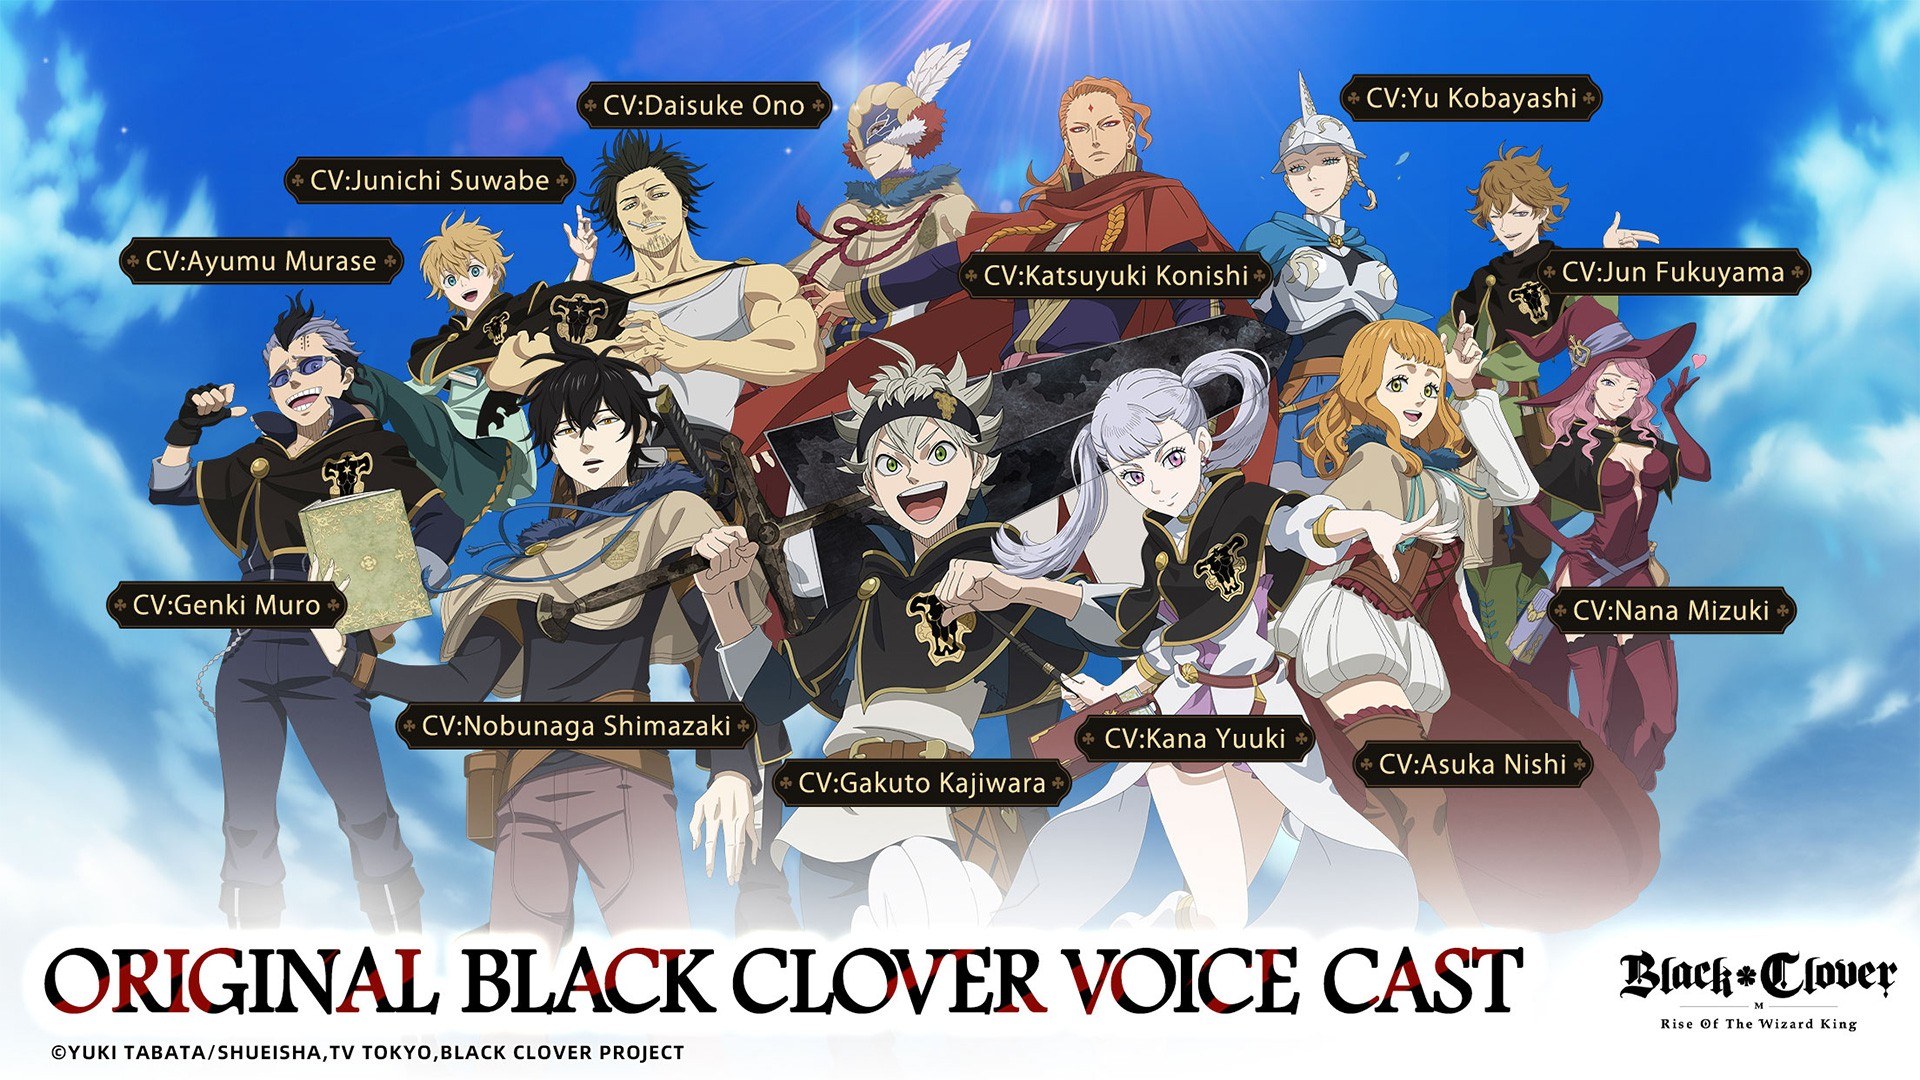 Black Clover – Black Clover PT Br News